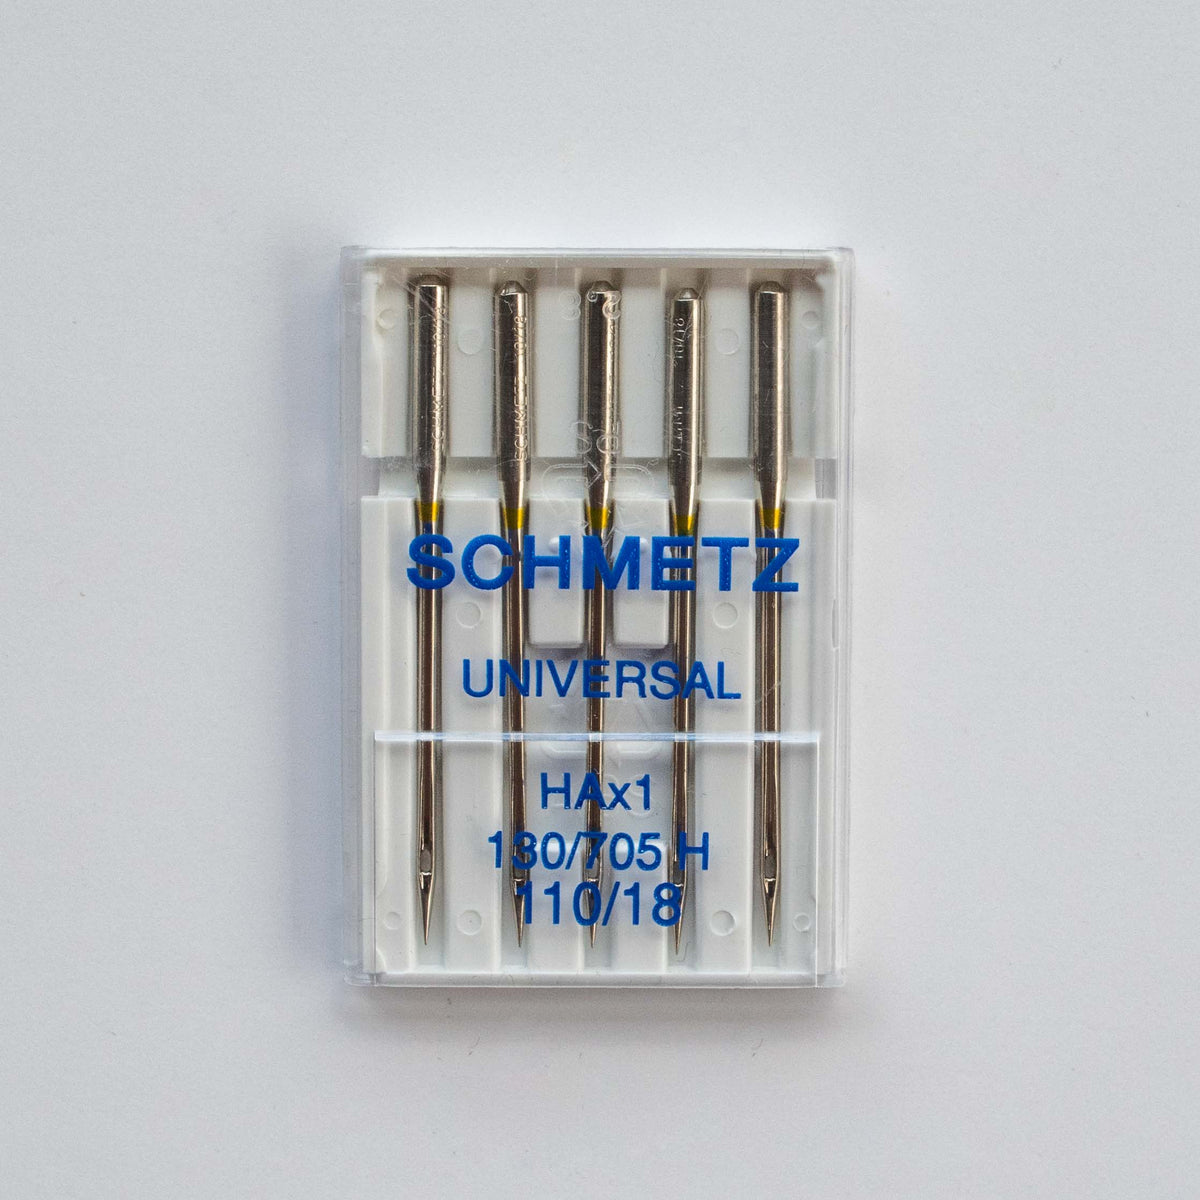 Machine Needles - Schmetz Universal 110/18 - MaaiDesign